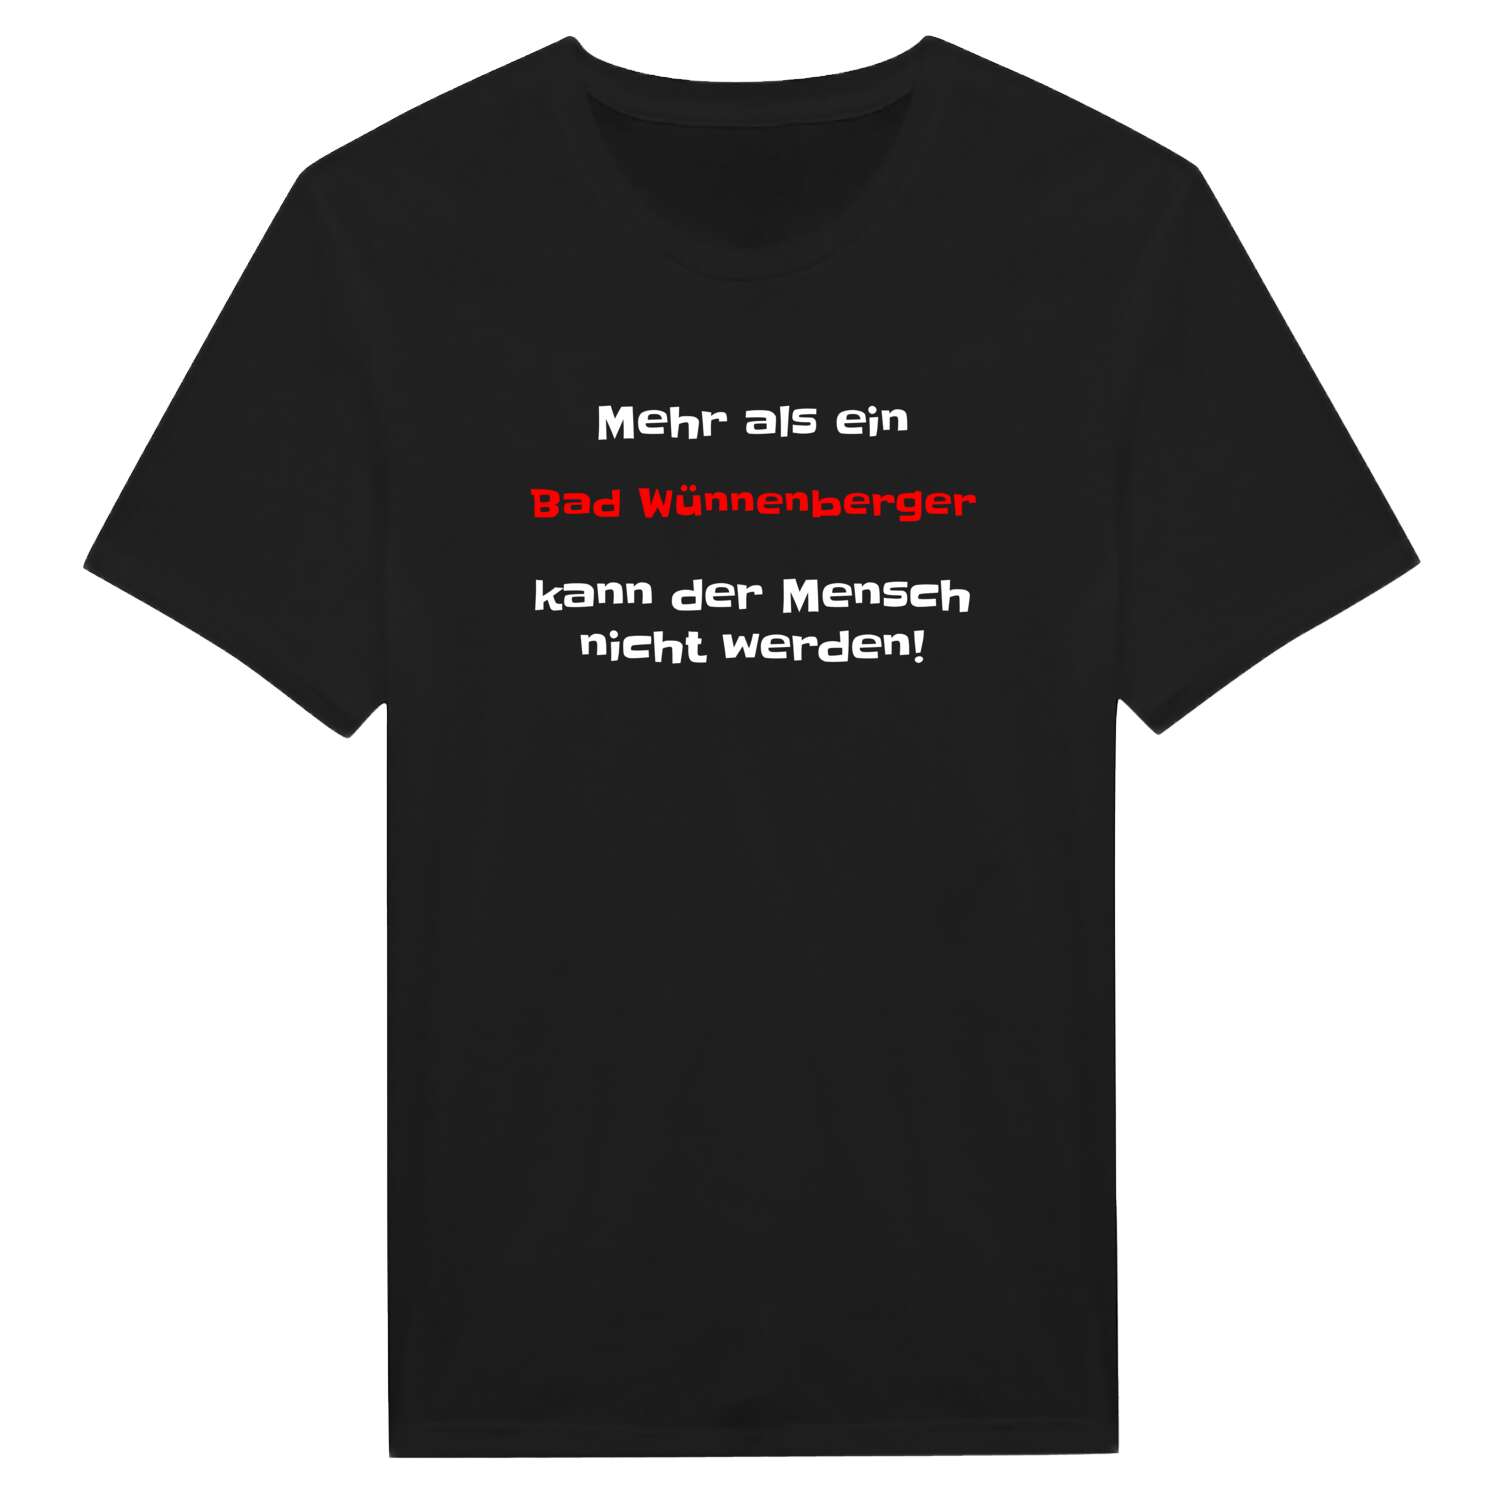 Bad Wünnenberg T-Shirt »Mehr als ein«